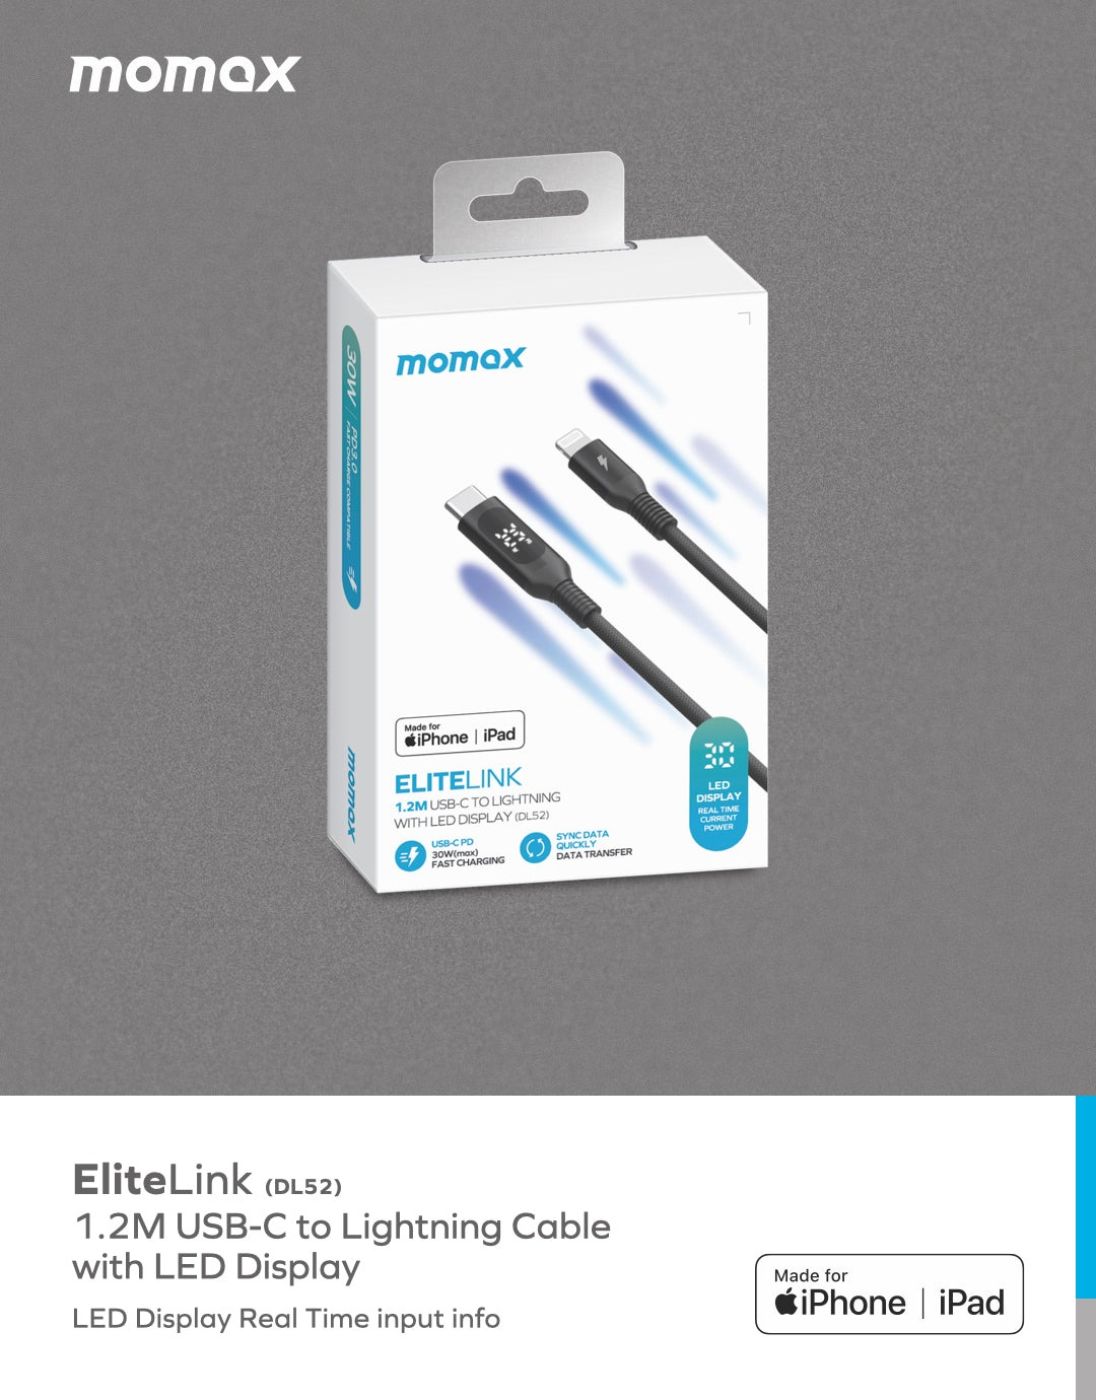 Cáp sạc nhanh bện nylon Momax Elitelink USB-C to Lightning PD 30W (1.2m) MFI DL52